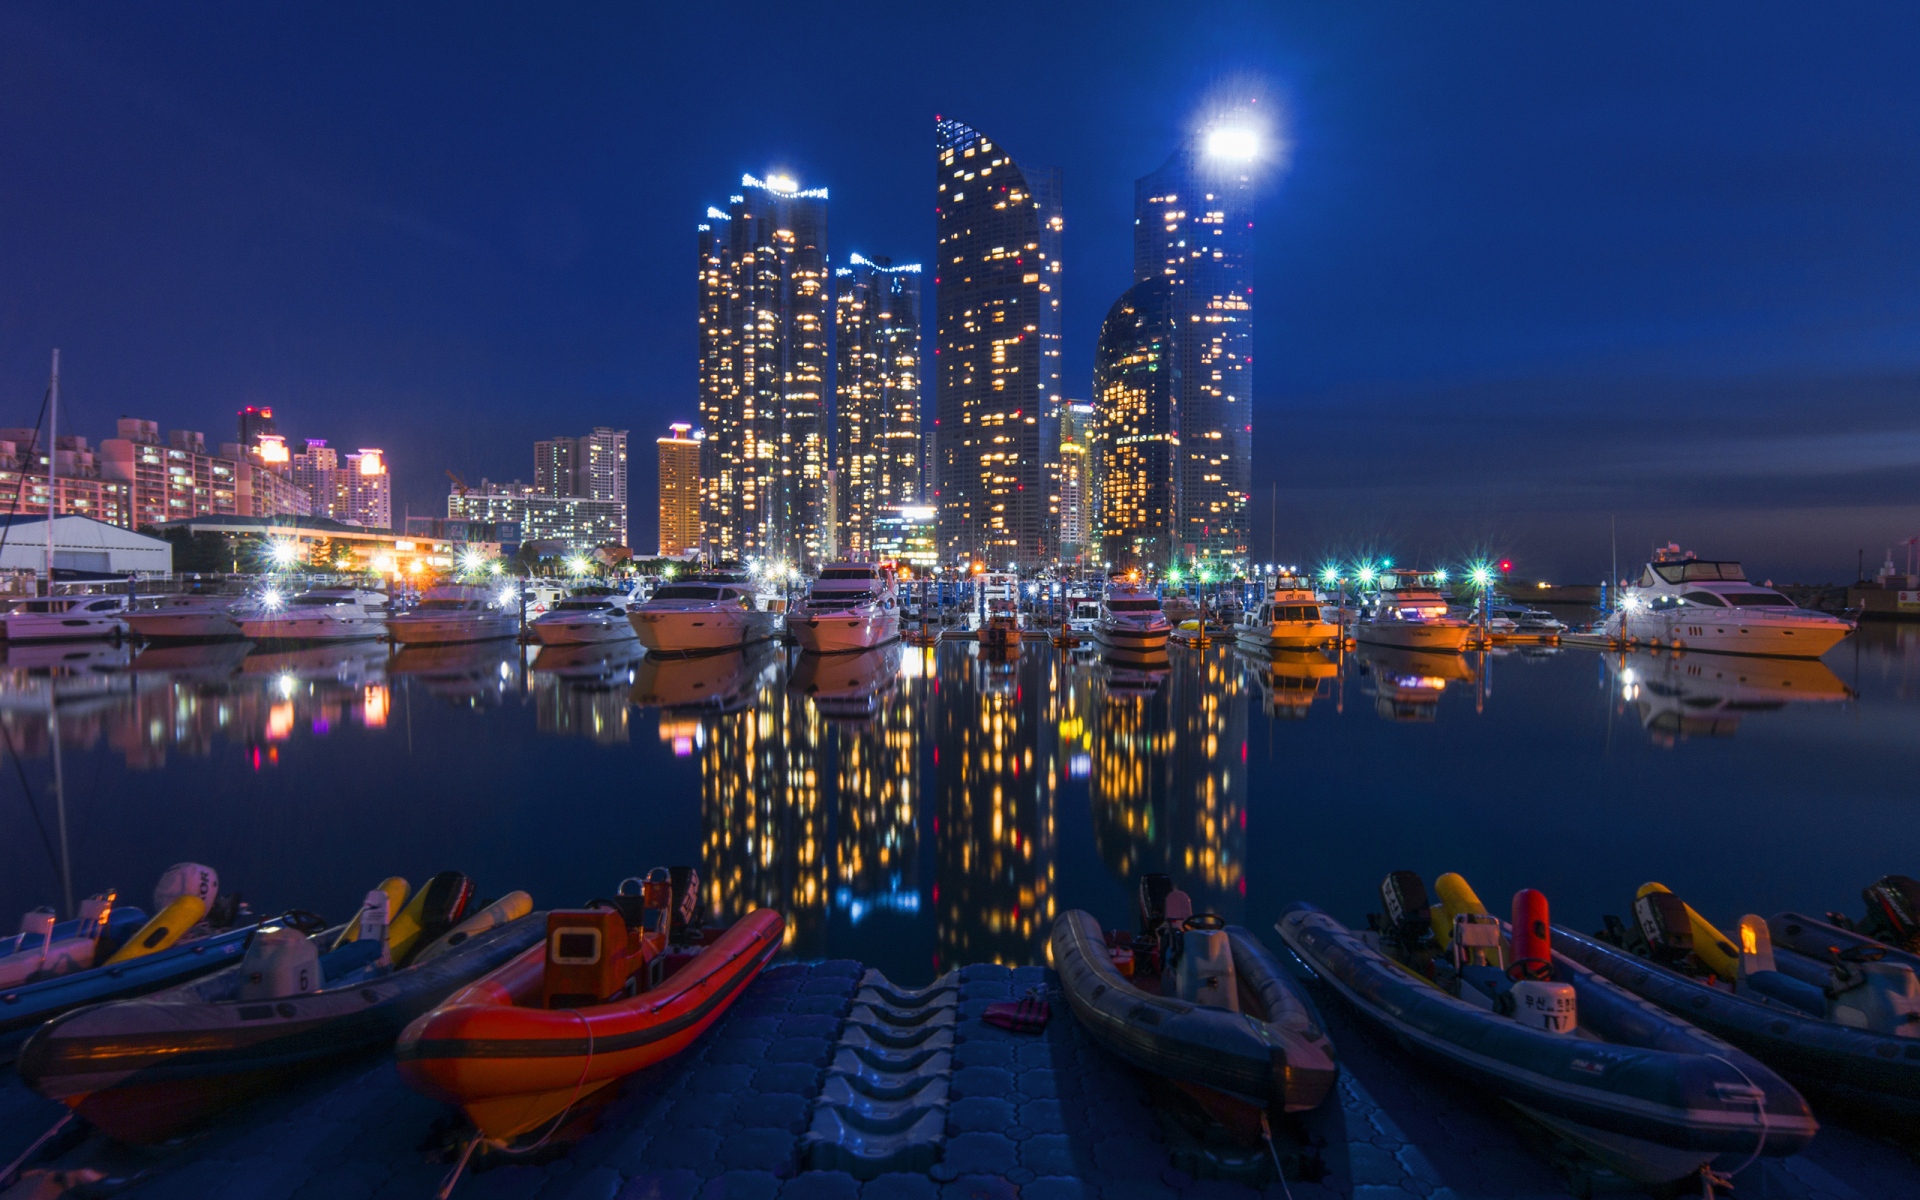 Картинки Ночной город, здания, ночь, небо, лодки фото и обои на рабочий стол